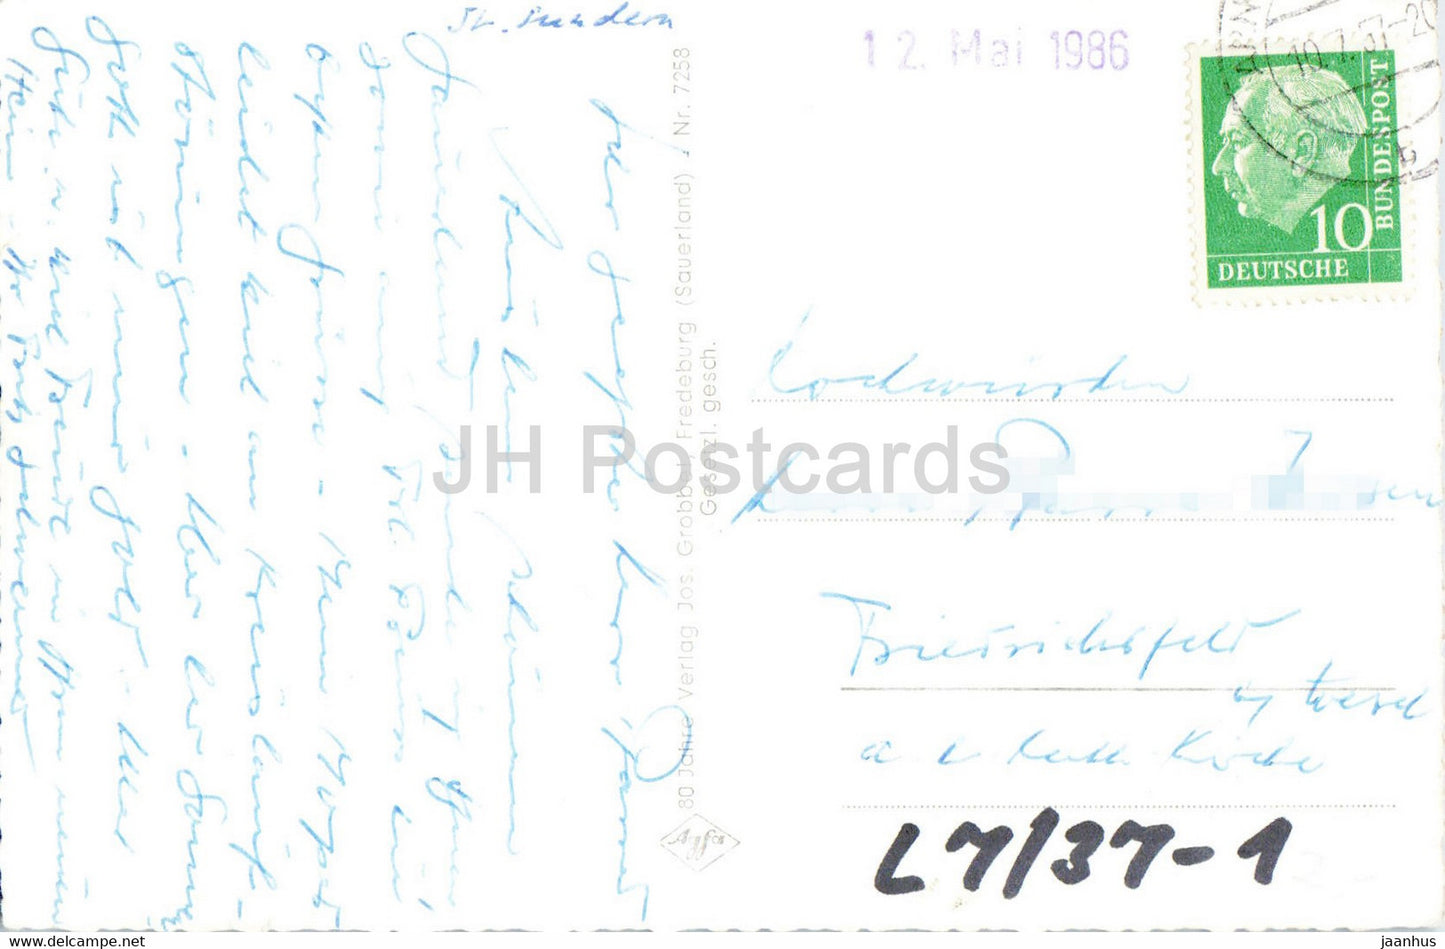 Sorpedamm mit Blick auf Langscheid - Sauerland - old postcard - 1957 - Germany - used